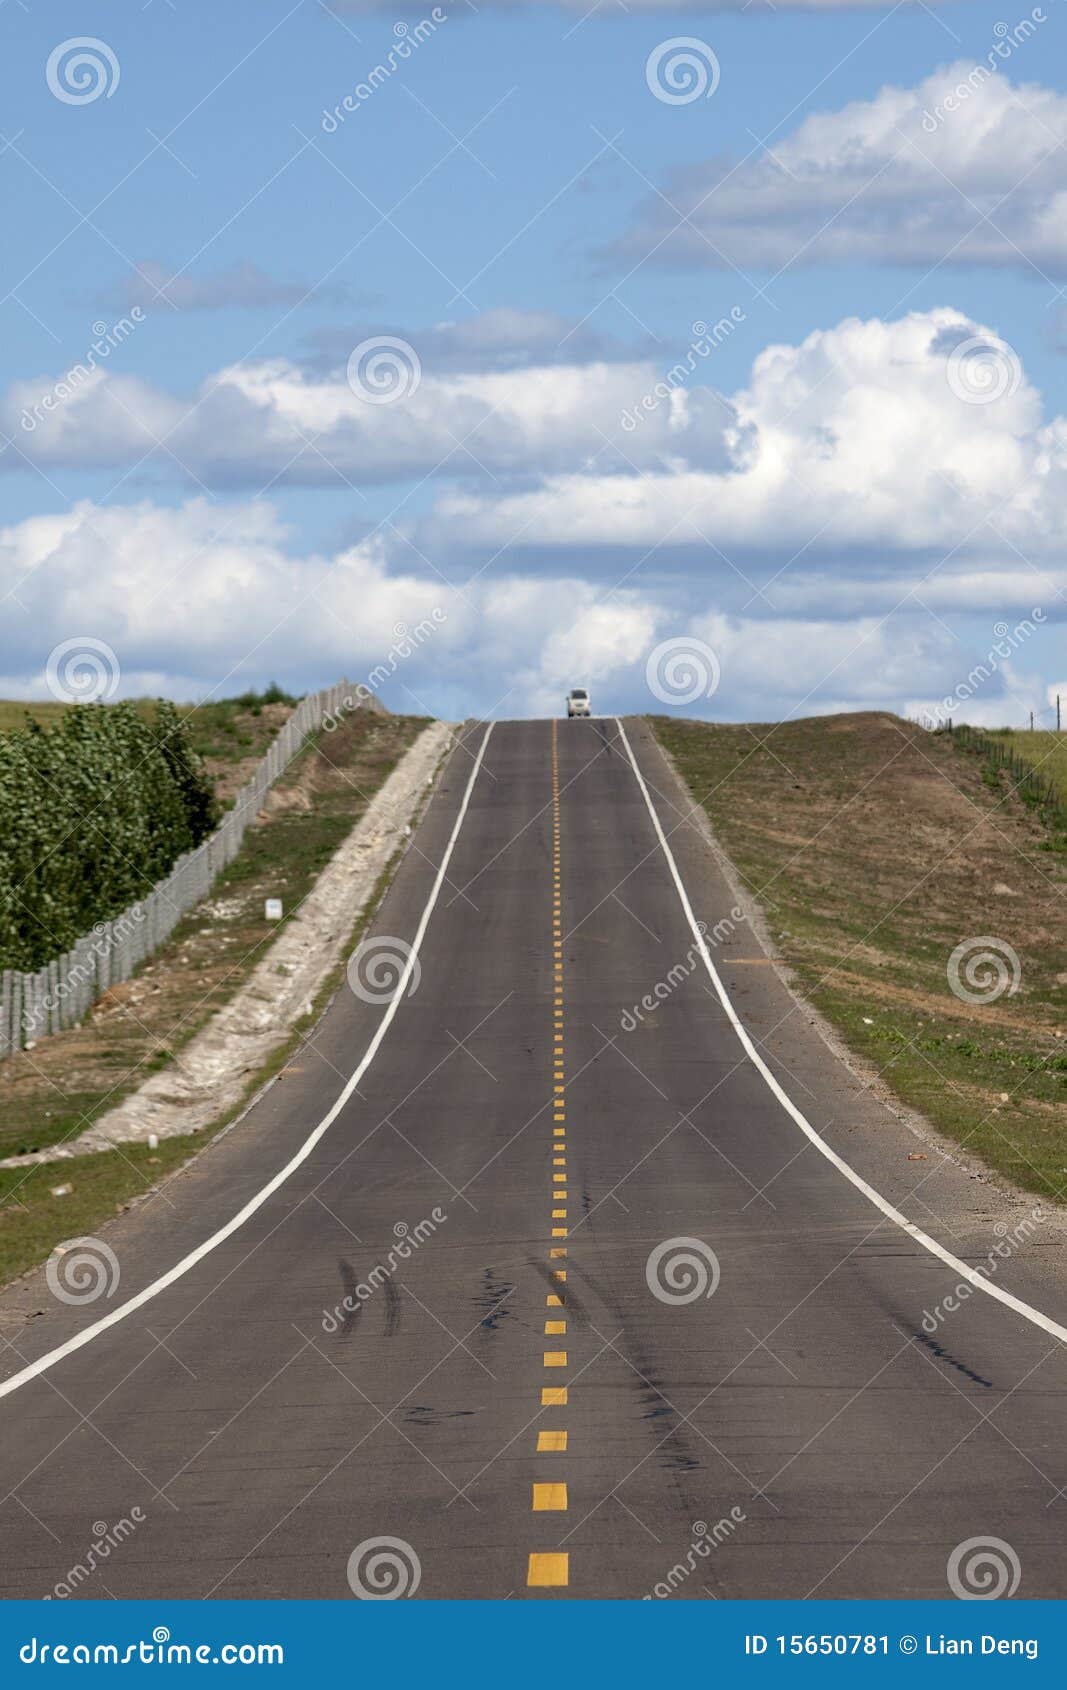 Ascending asphalt road